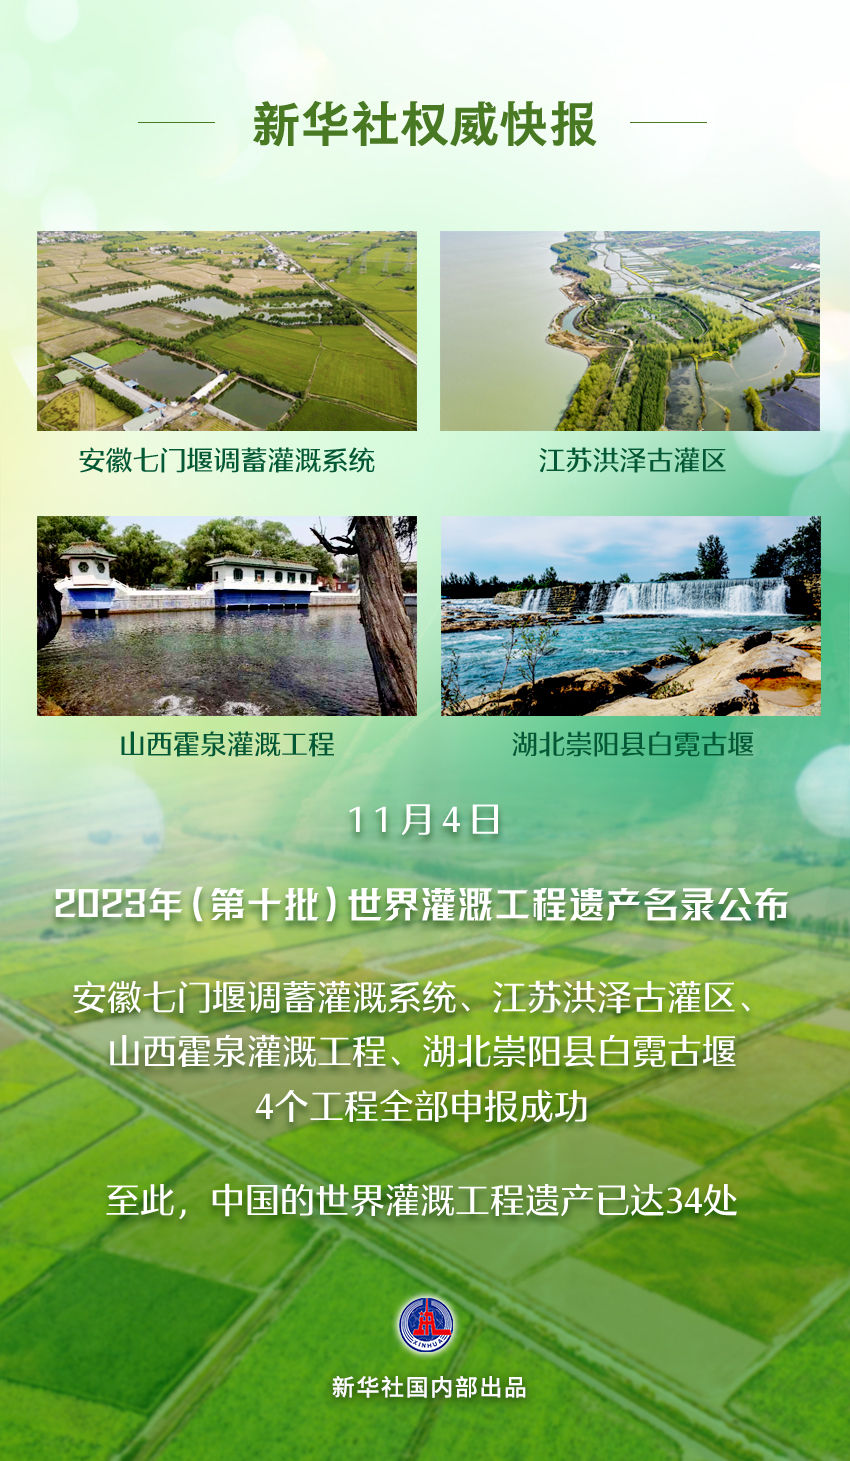 快讯！中国再添4处世界灌溉工程遗产